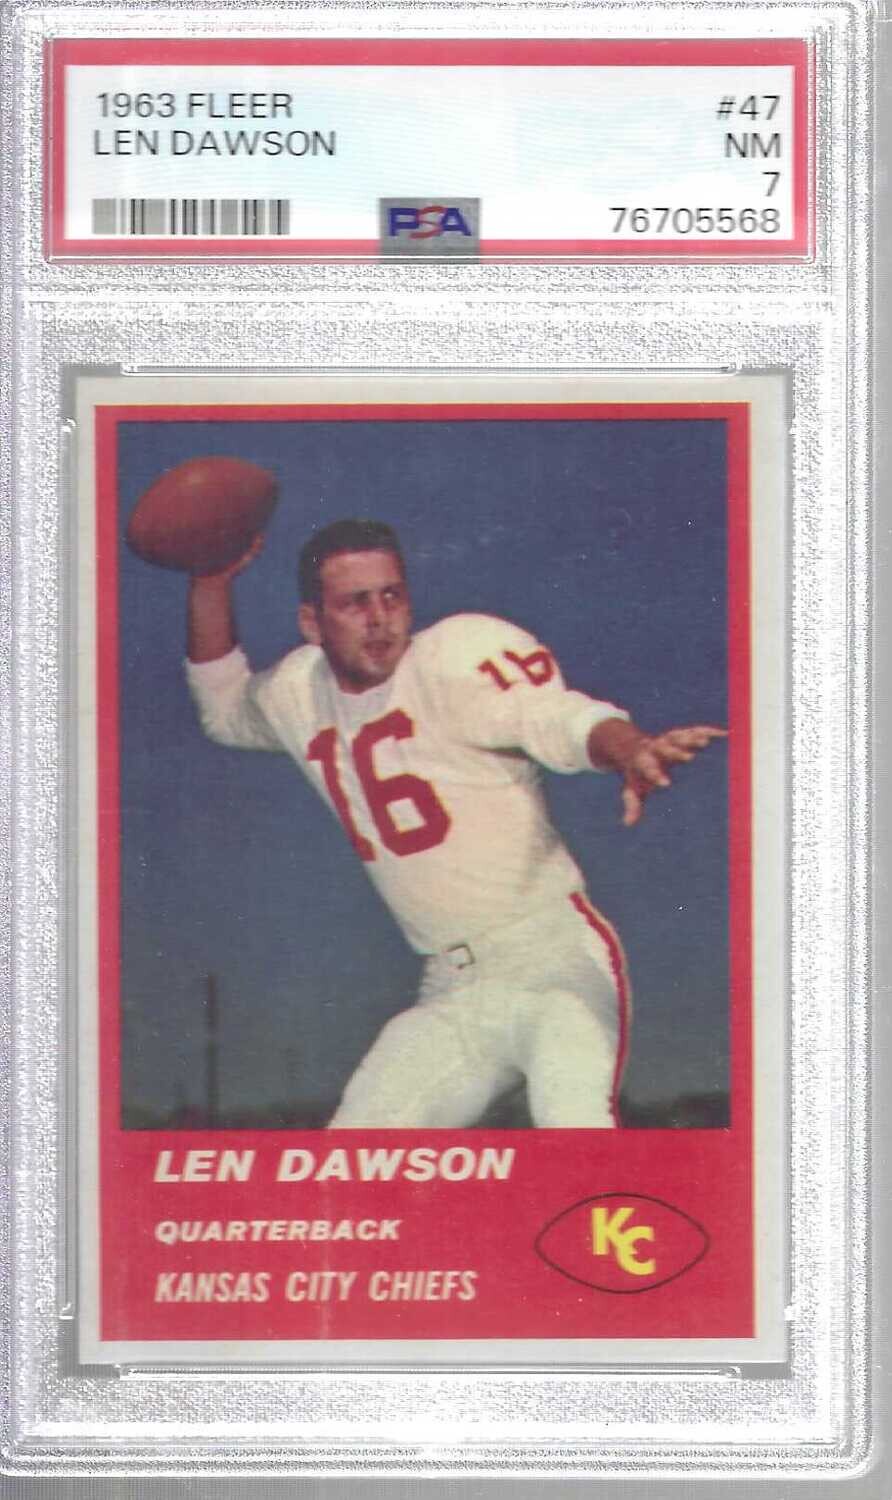 1963 Fleer #47 Len Dawson rookie PSA 7